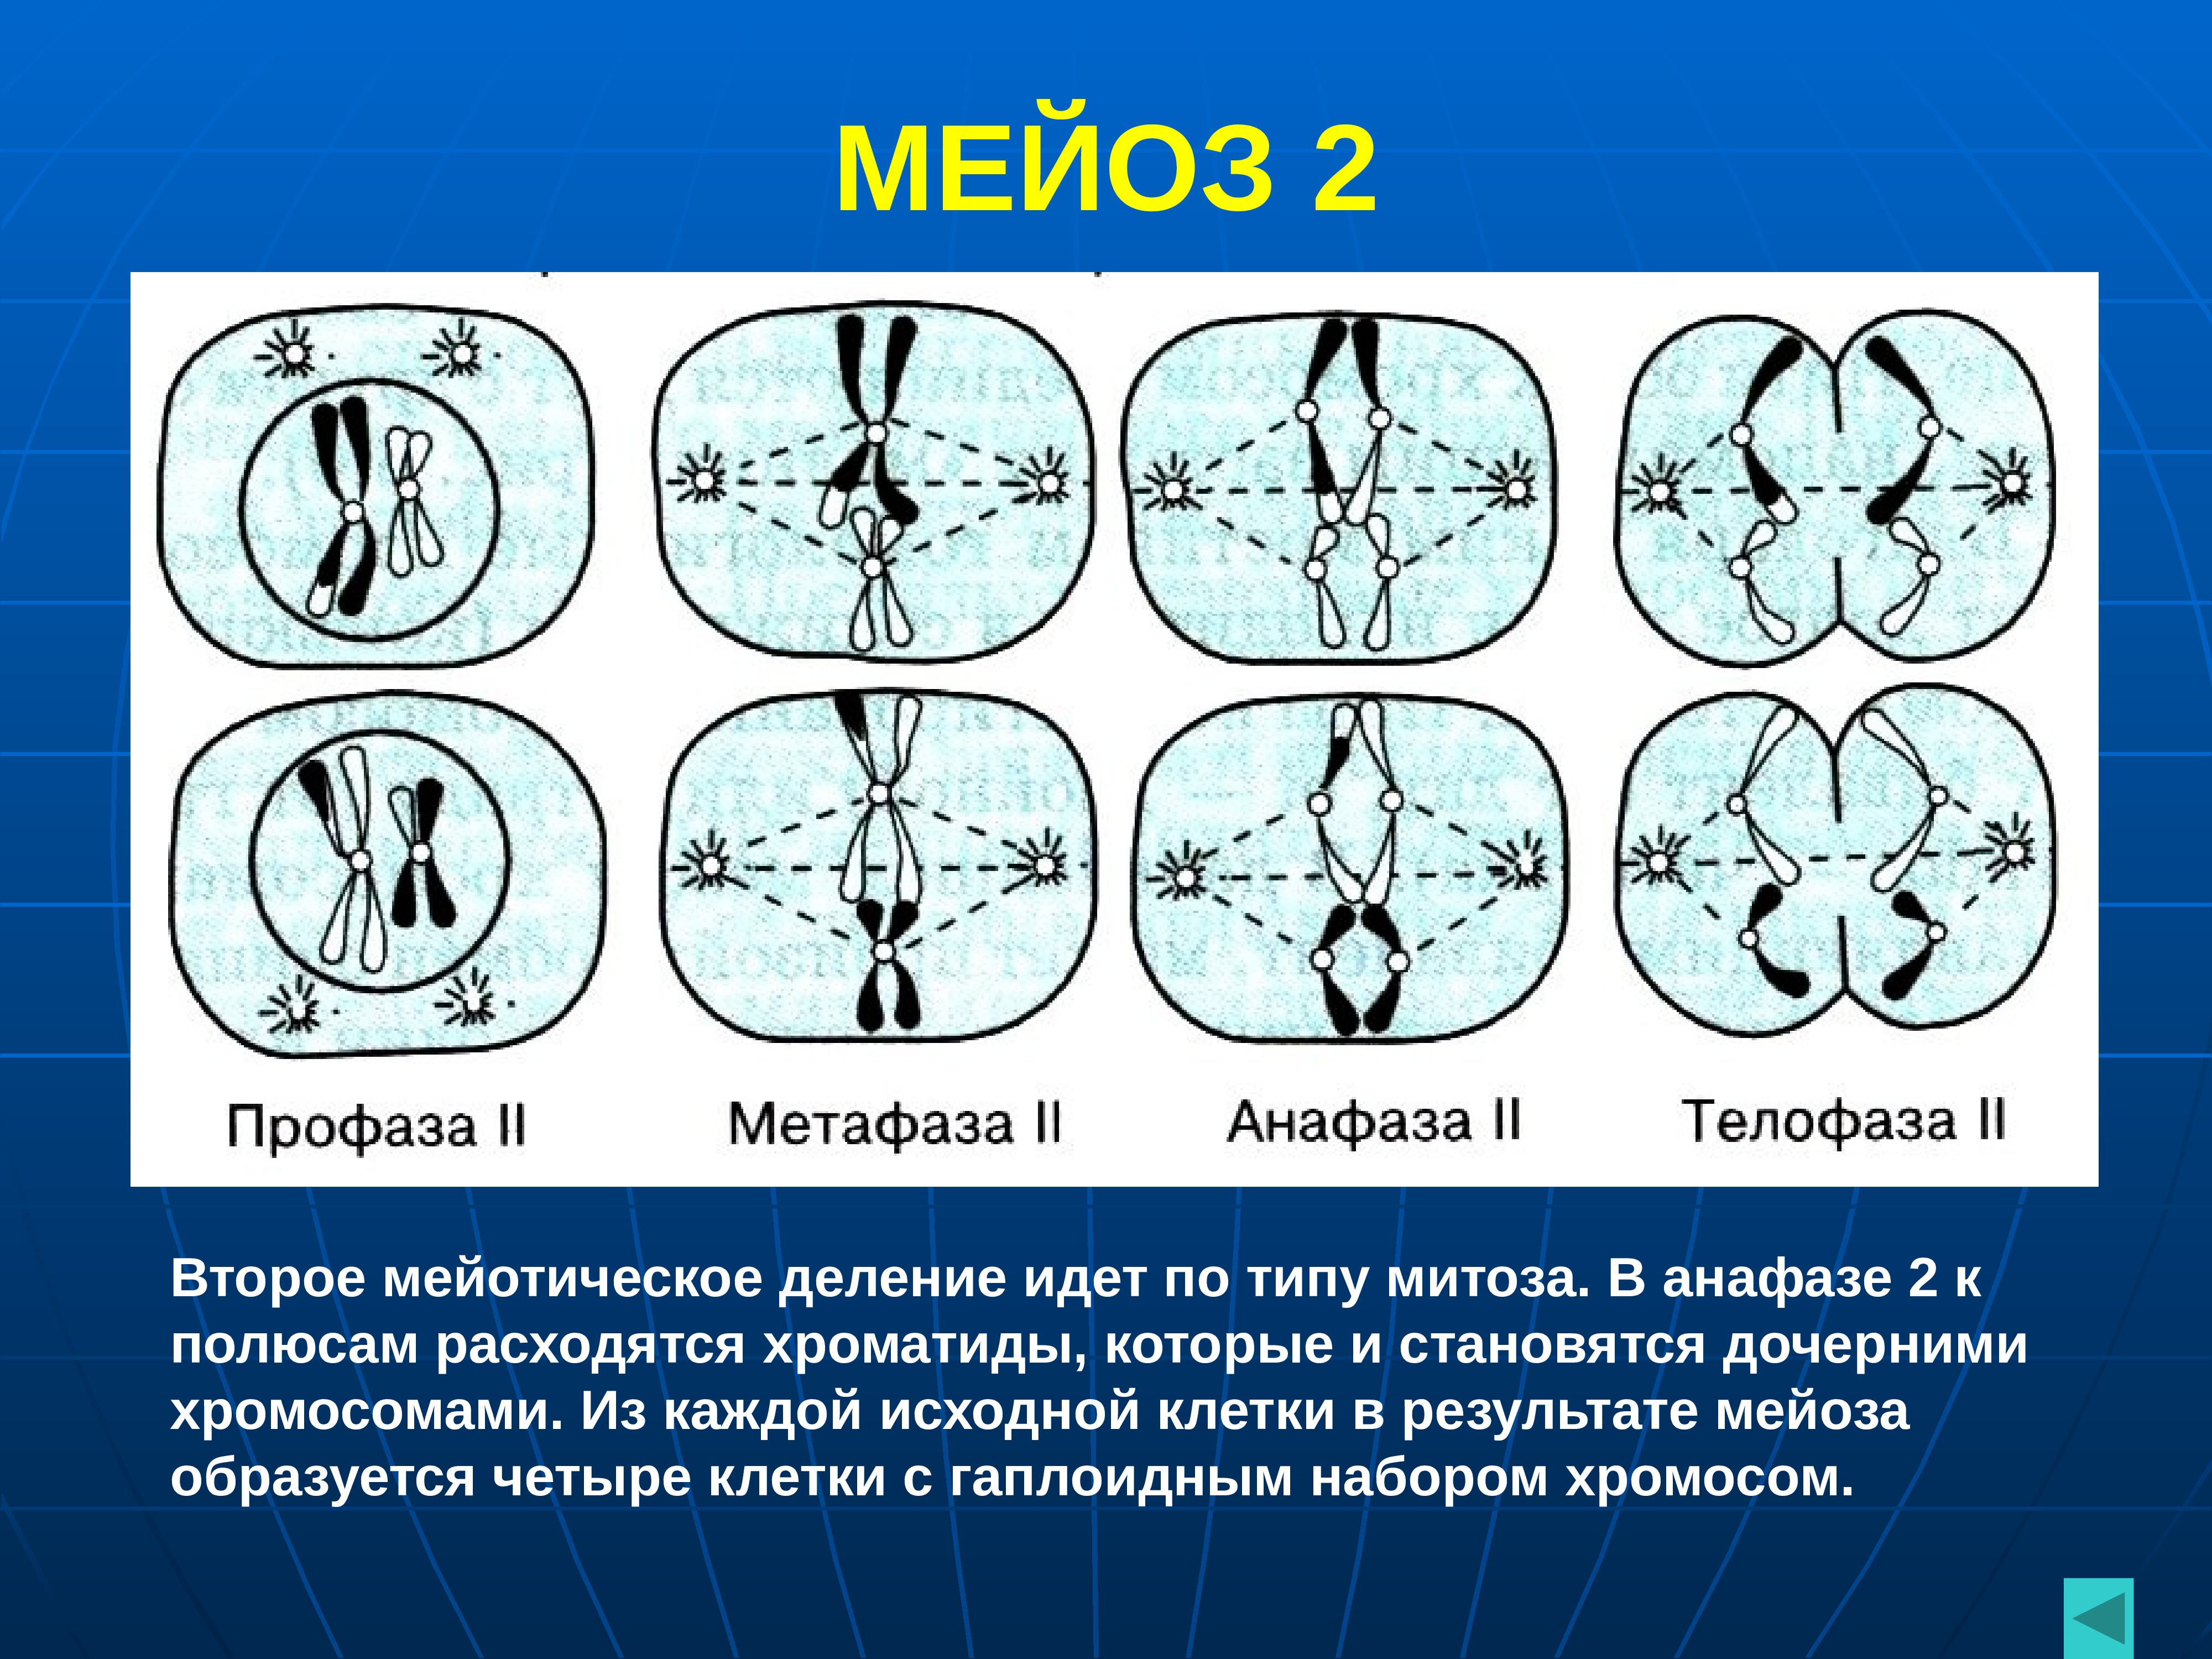 Результат профазы 1. Фазы мейоза 2 деление. Метафаза мейоза 1 и 2. Анафаза второго деления мейоза. Профаза второго деления мейоза.